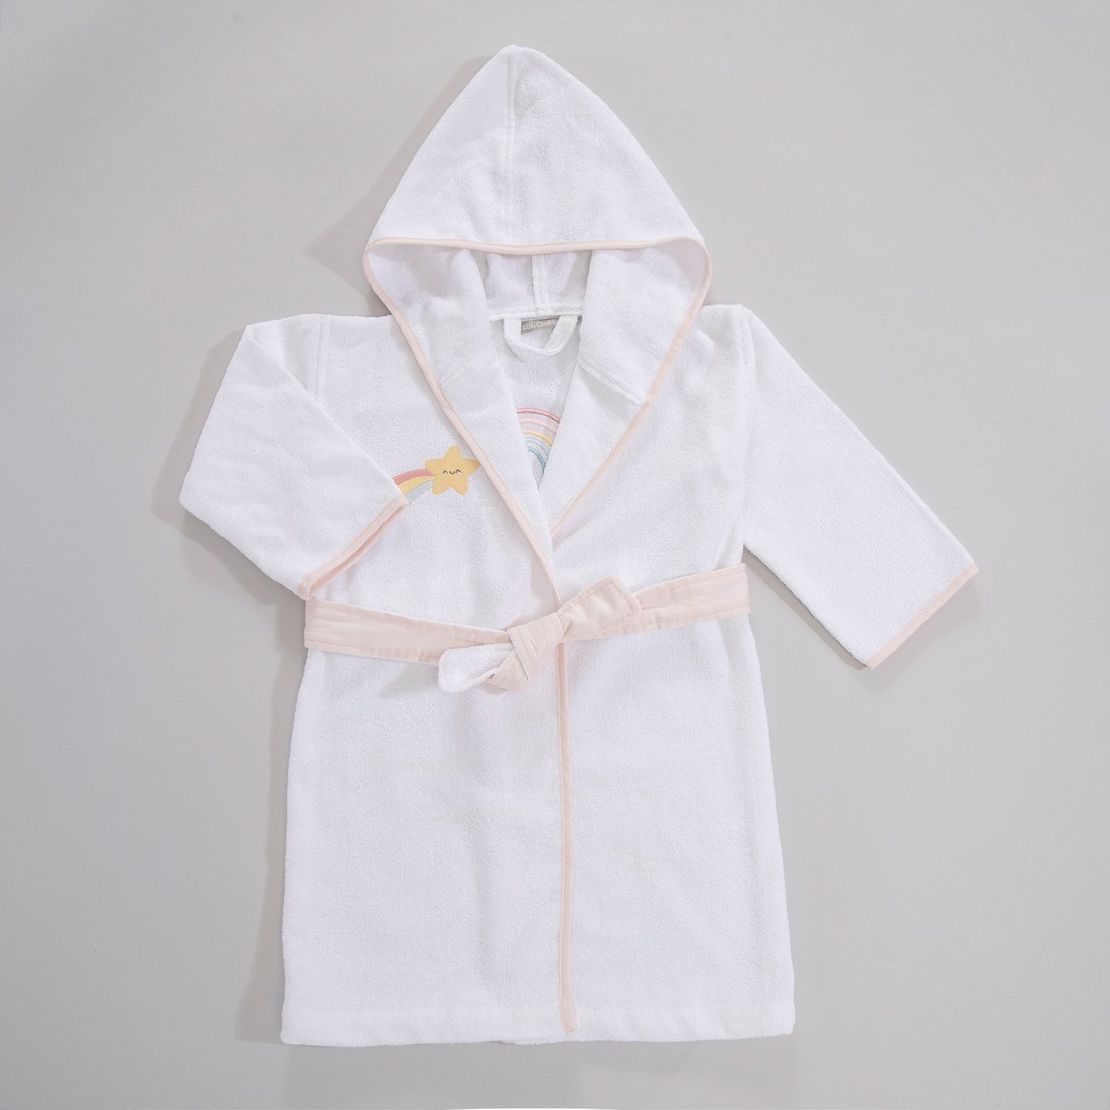 Дитячий махровий халат Rainbow, для дівчинки з аплікацією Веселка єдинорога 3-4 роки, білий